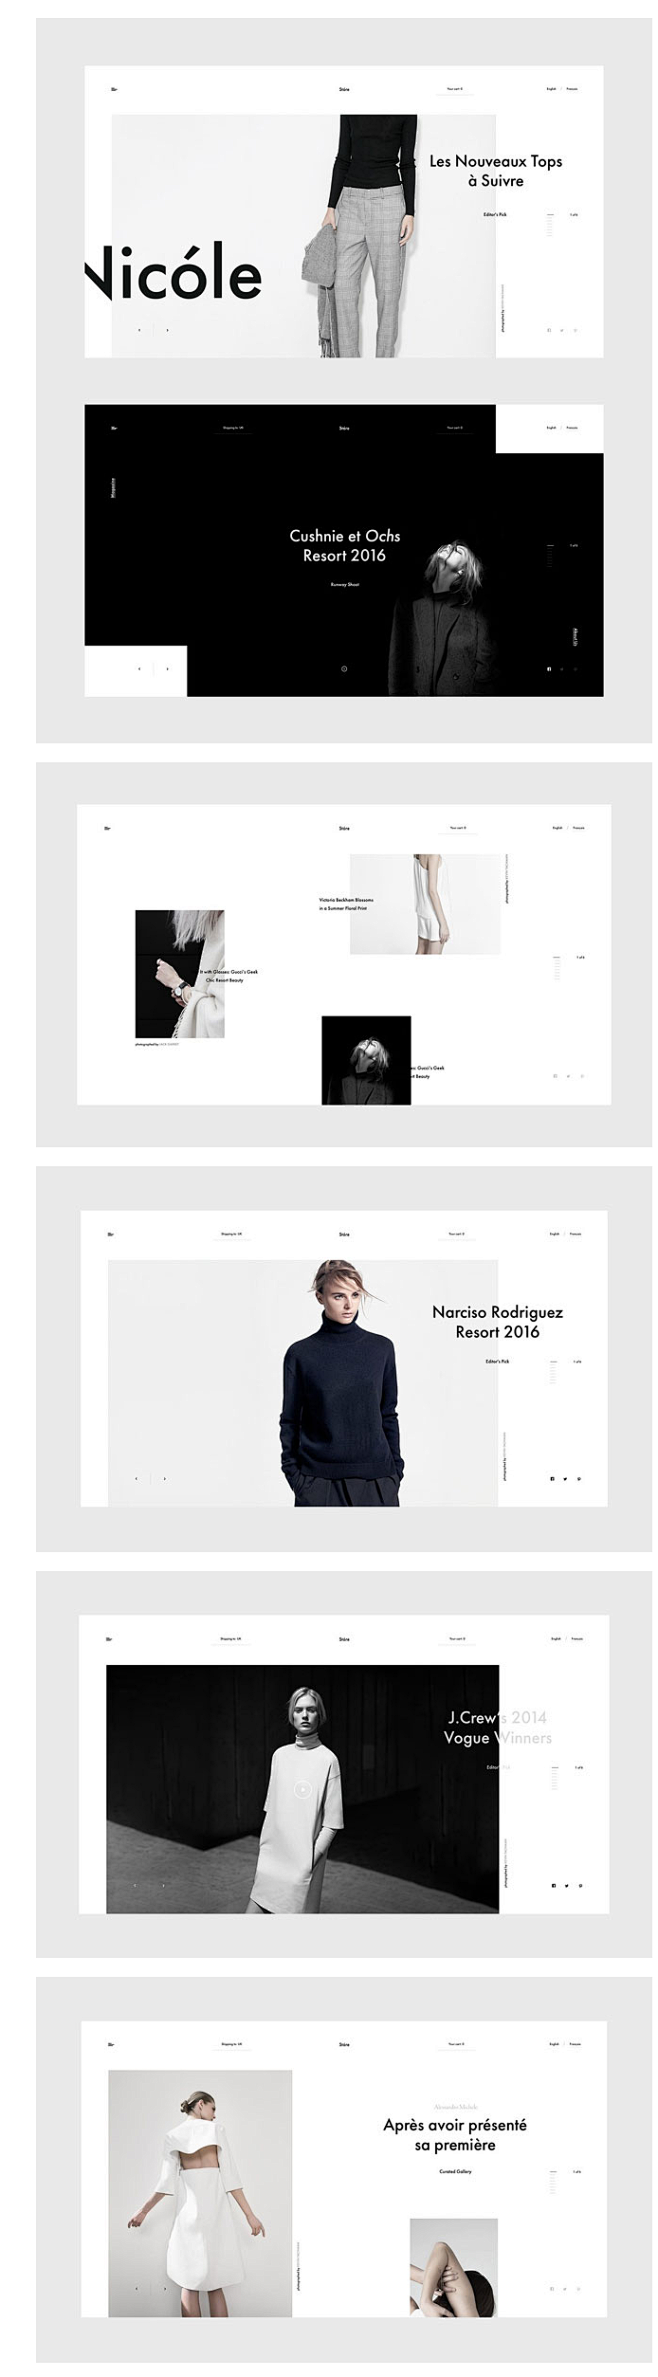 极简时尚的服装品牌网页设计案例